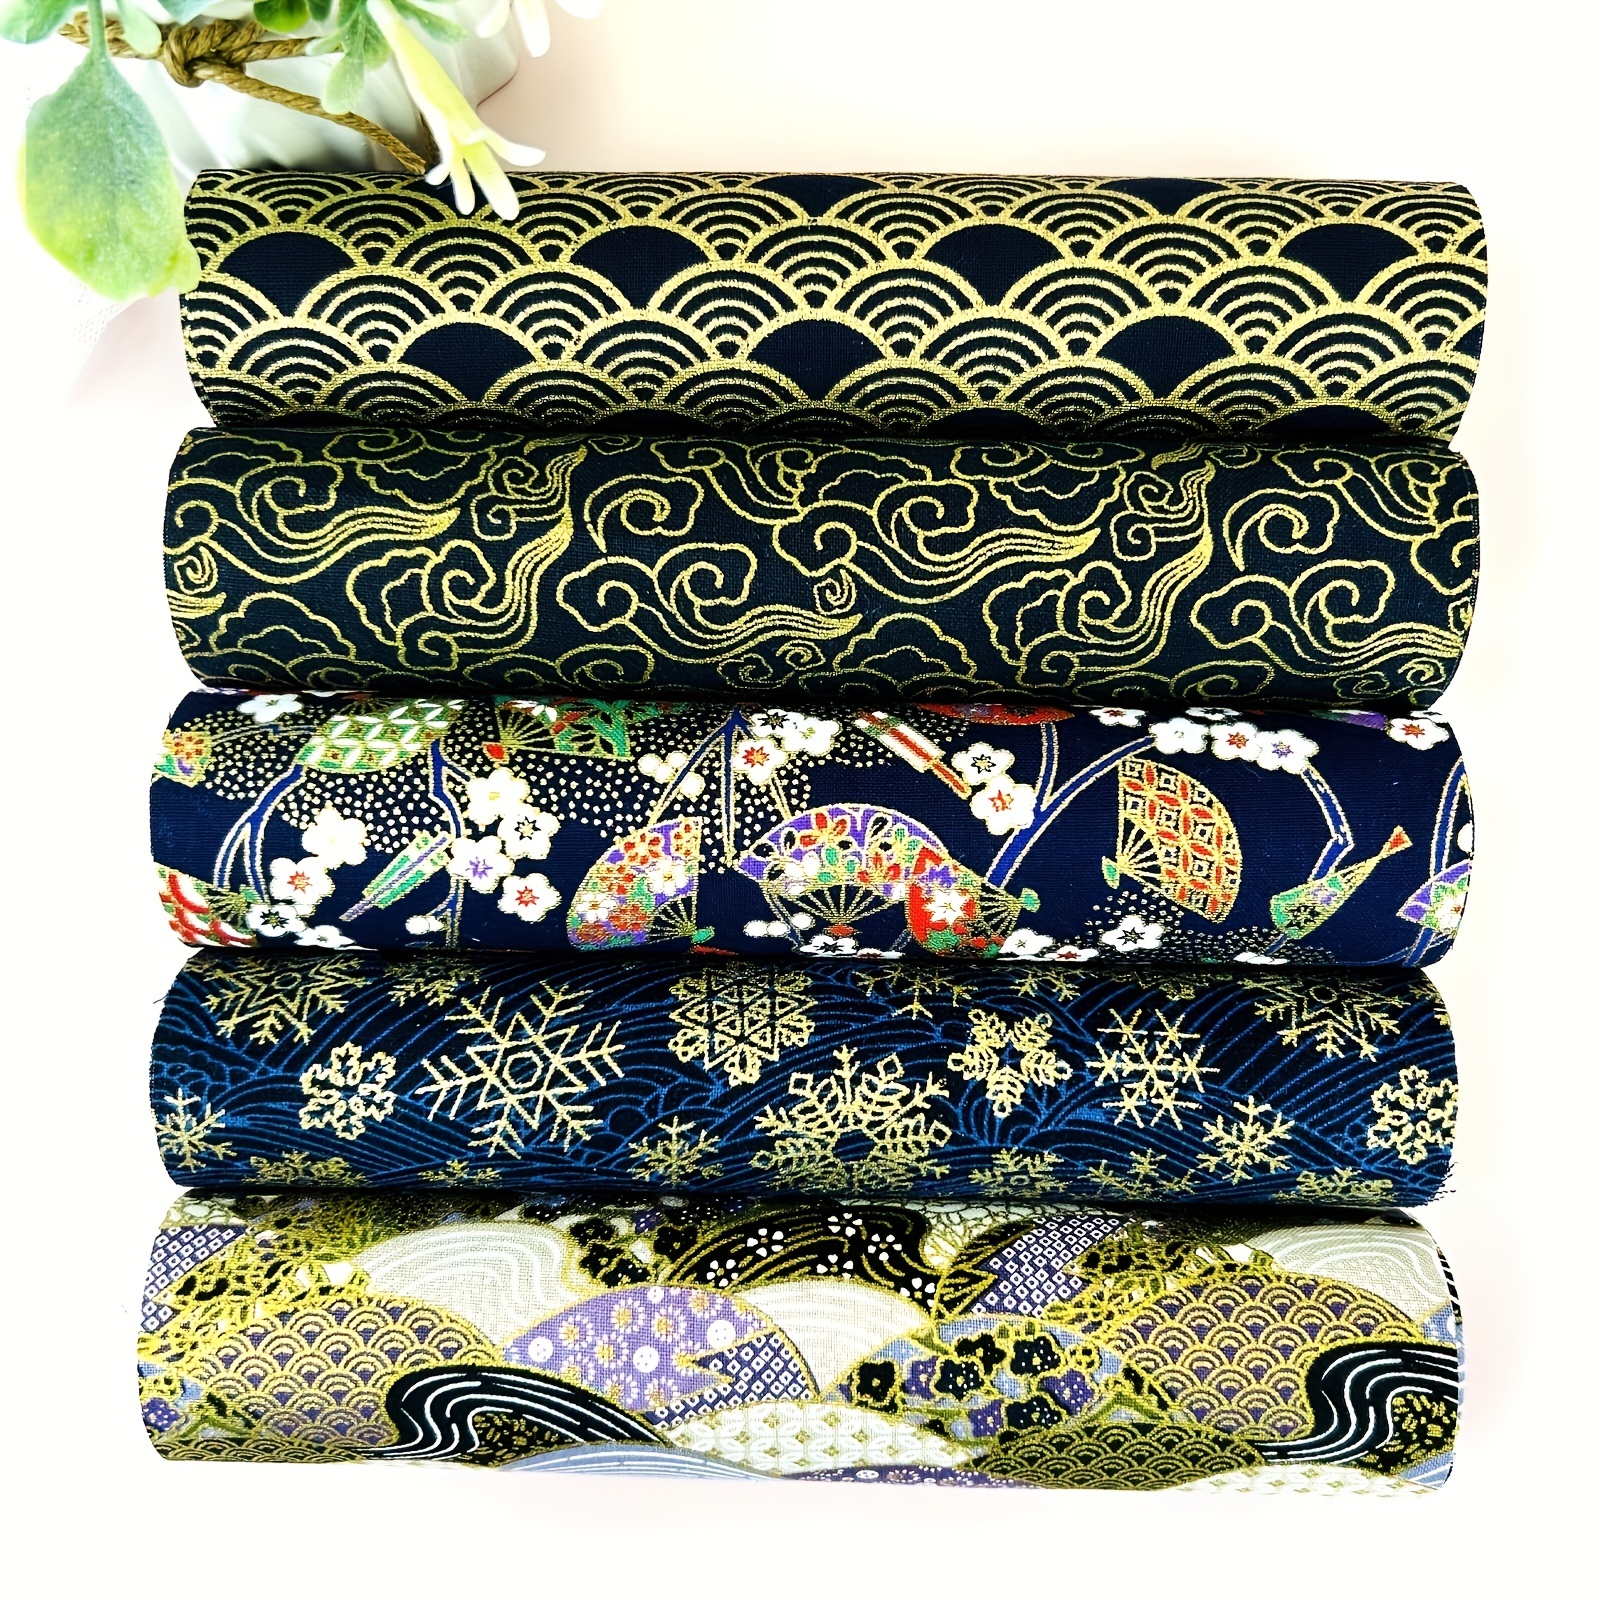 Paquete de 48 retales de tela de algodón para retazos (25 x 25 cm), color  rojo, rosa, morado, azul, verde y amarillo